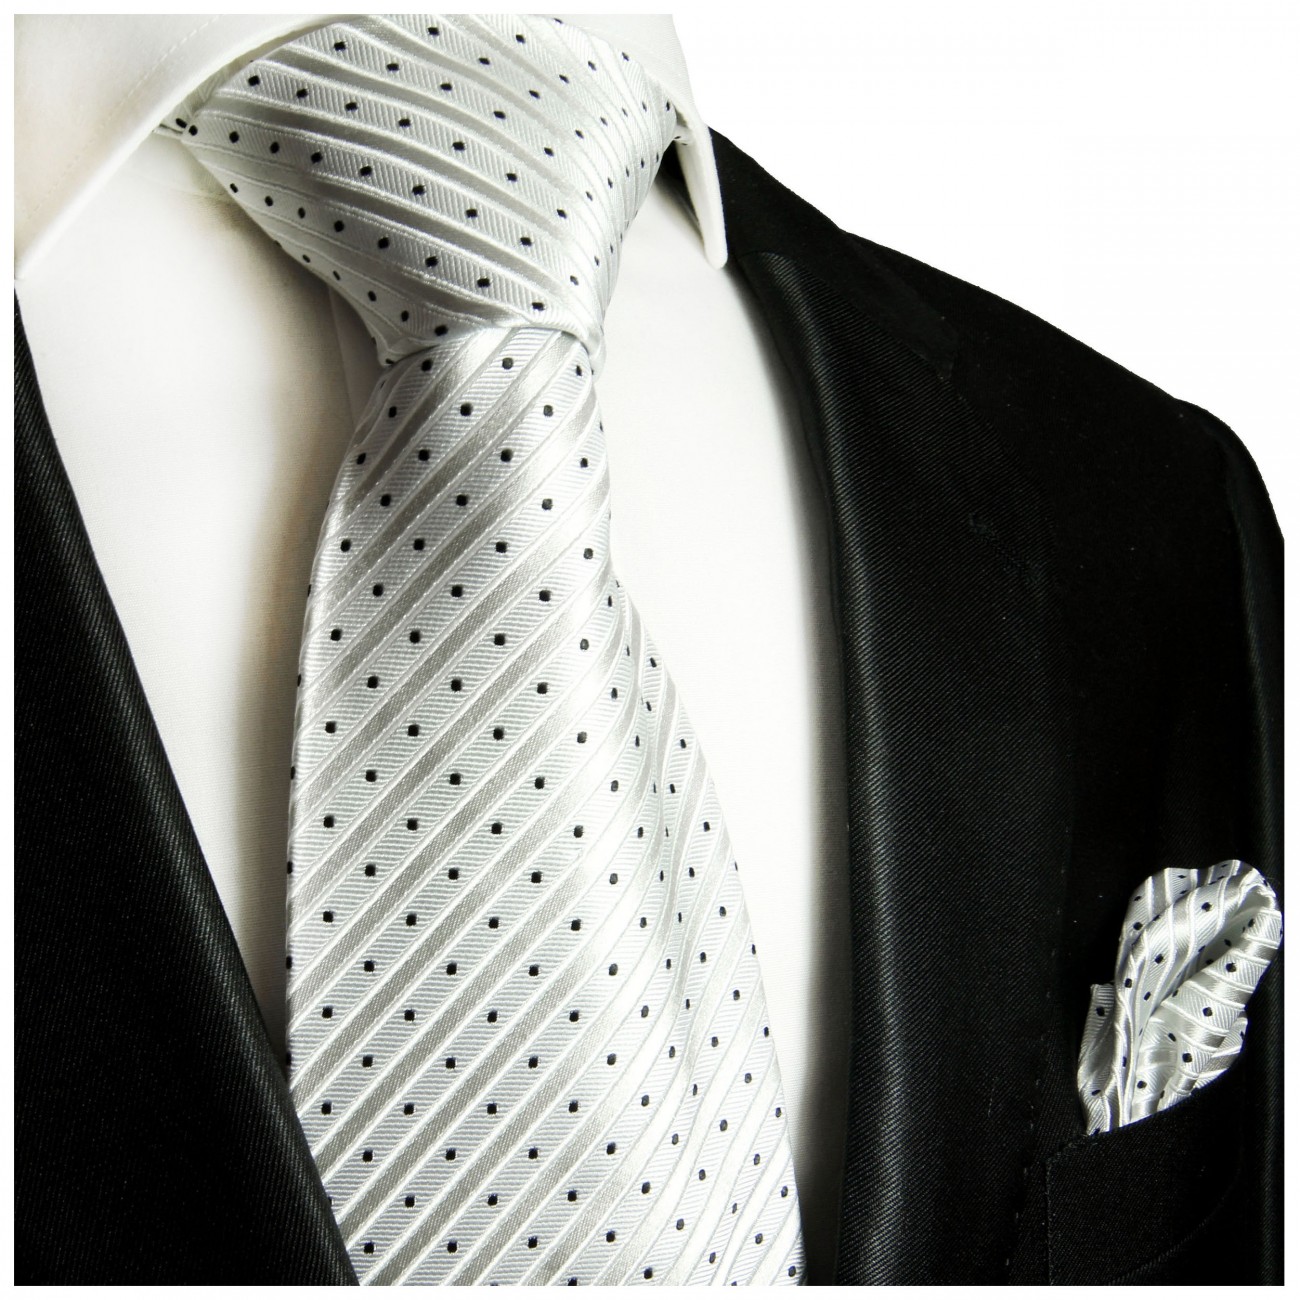 Krawatte silber weiß Seide gestreift mit Einstecktuch